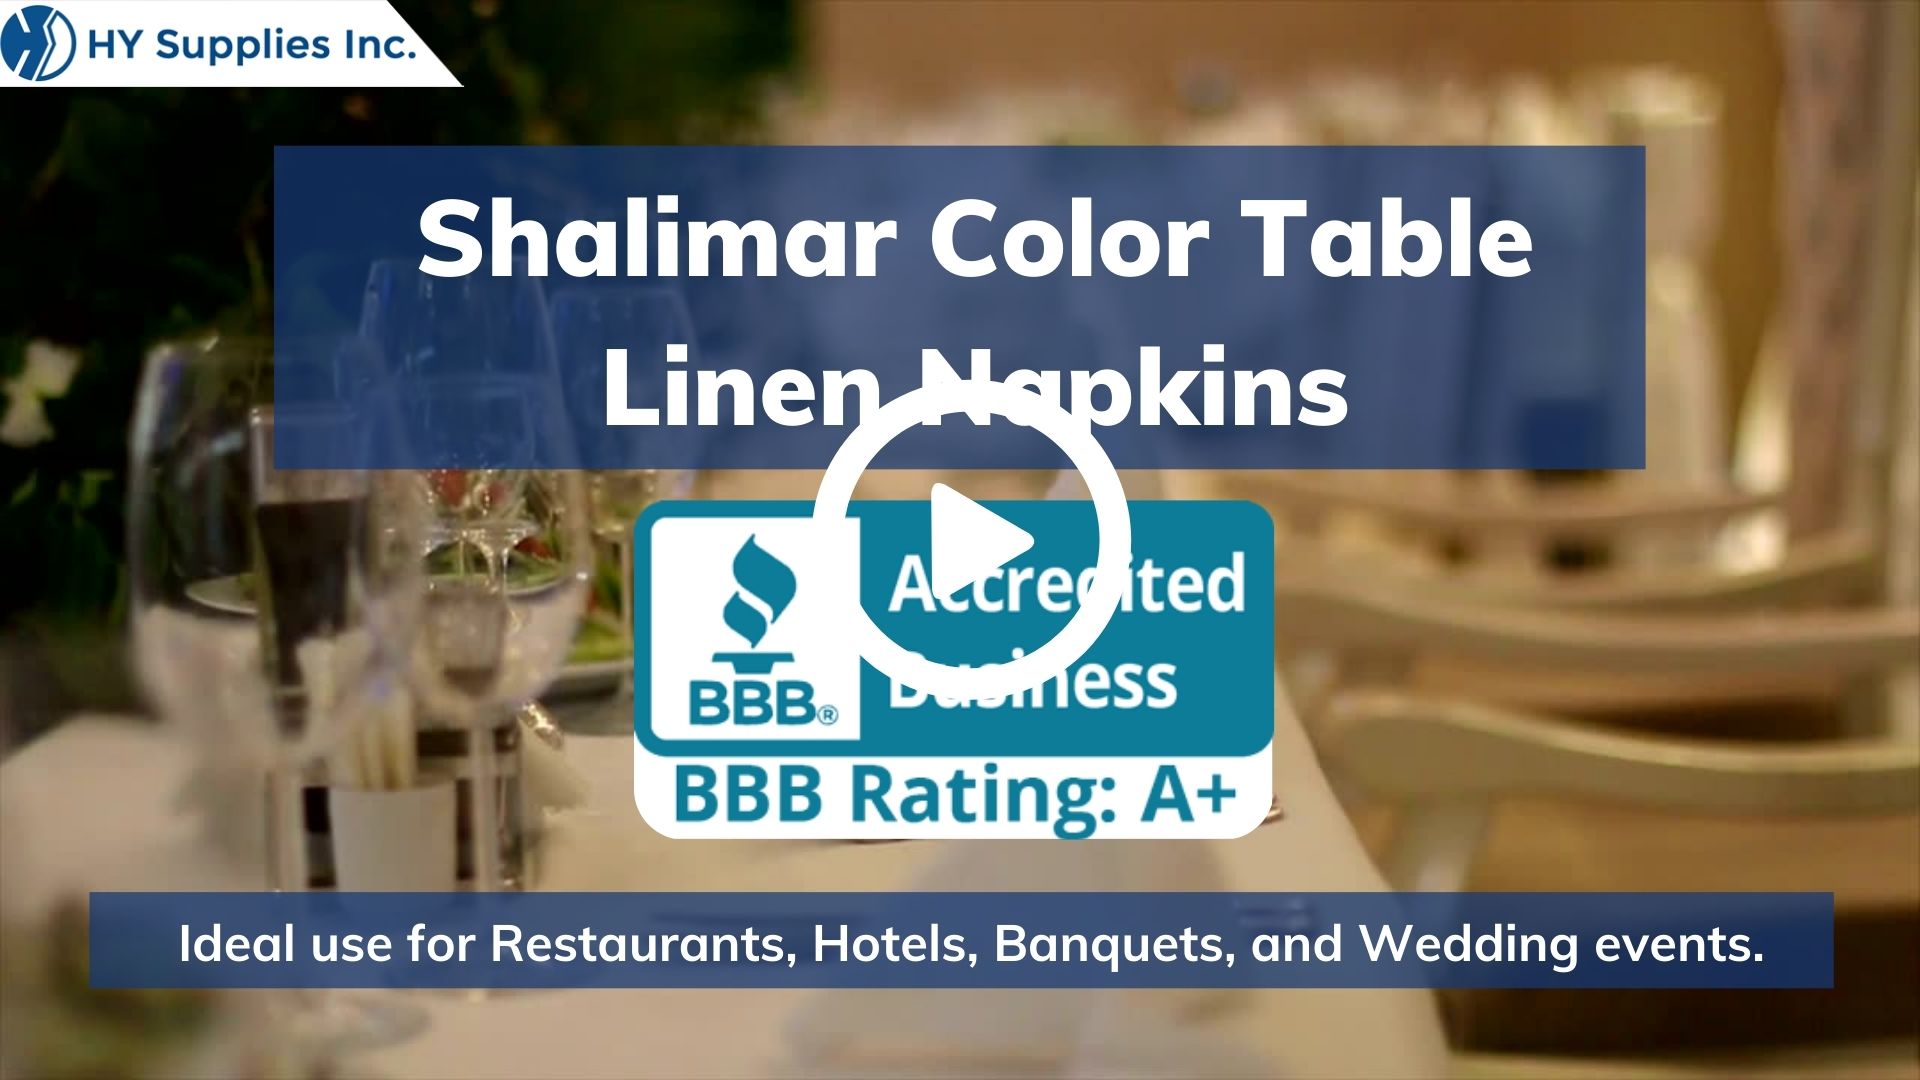 Shalimar Color Table Linen Napkins